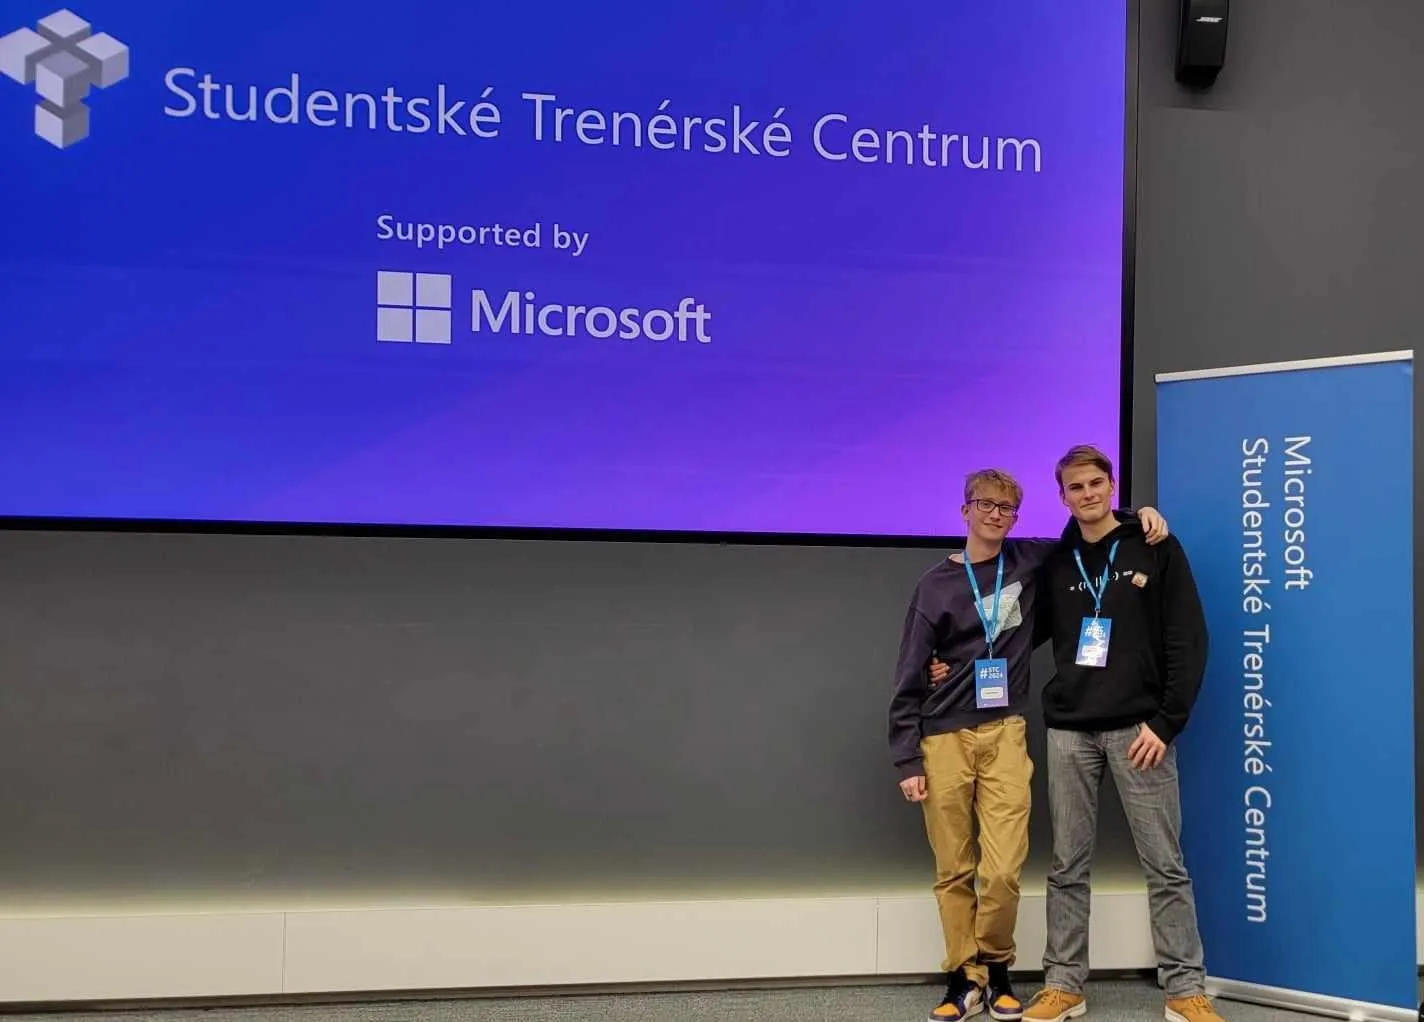 Radek Dolejška a Lukáš Žďárský byli vybráni do dvouletého studijního programu Microsoftu STC